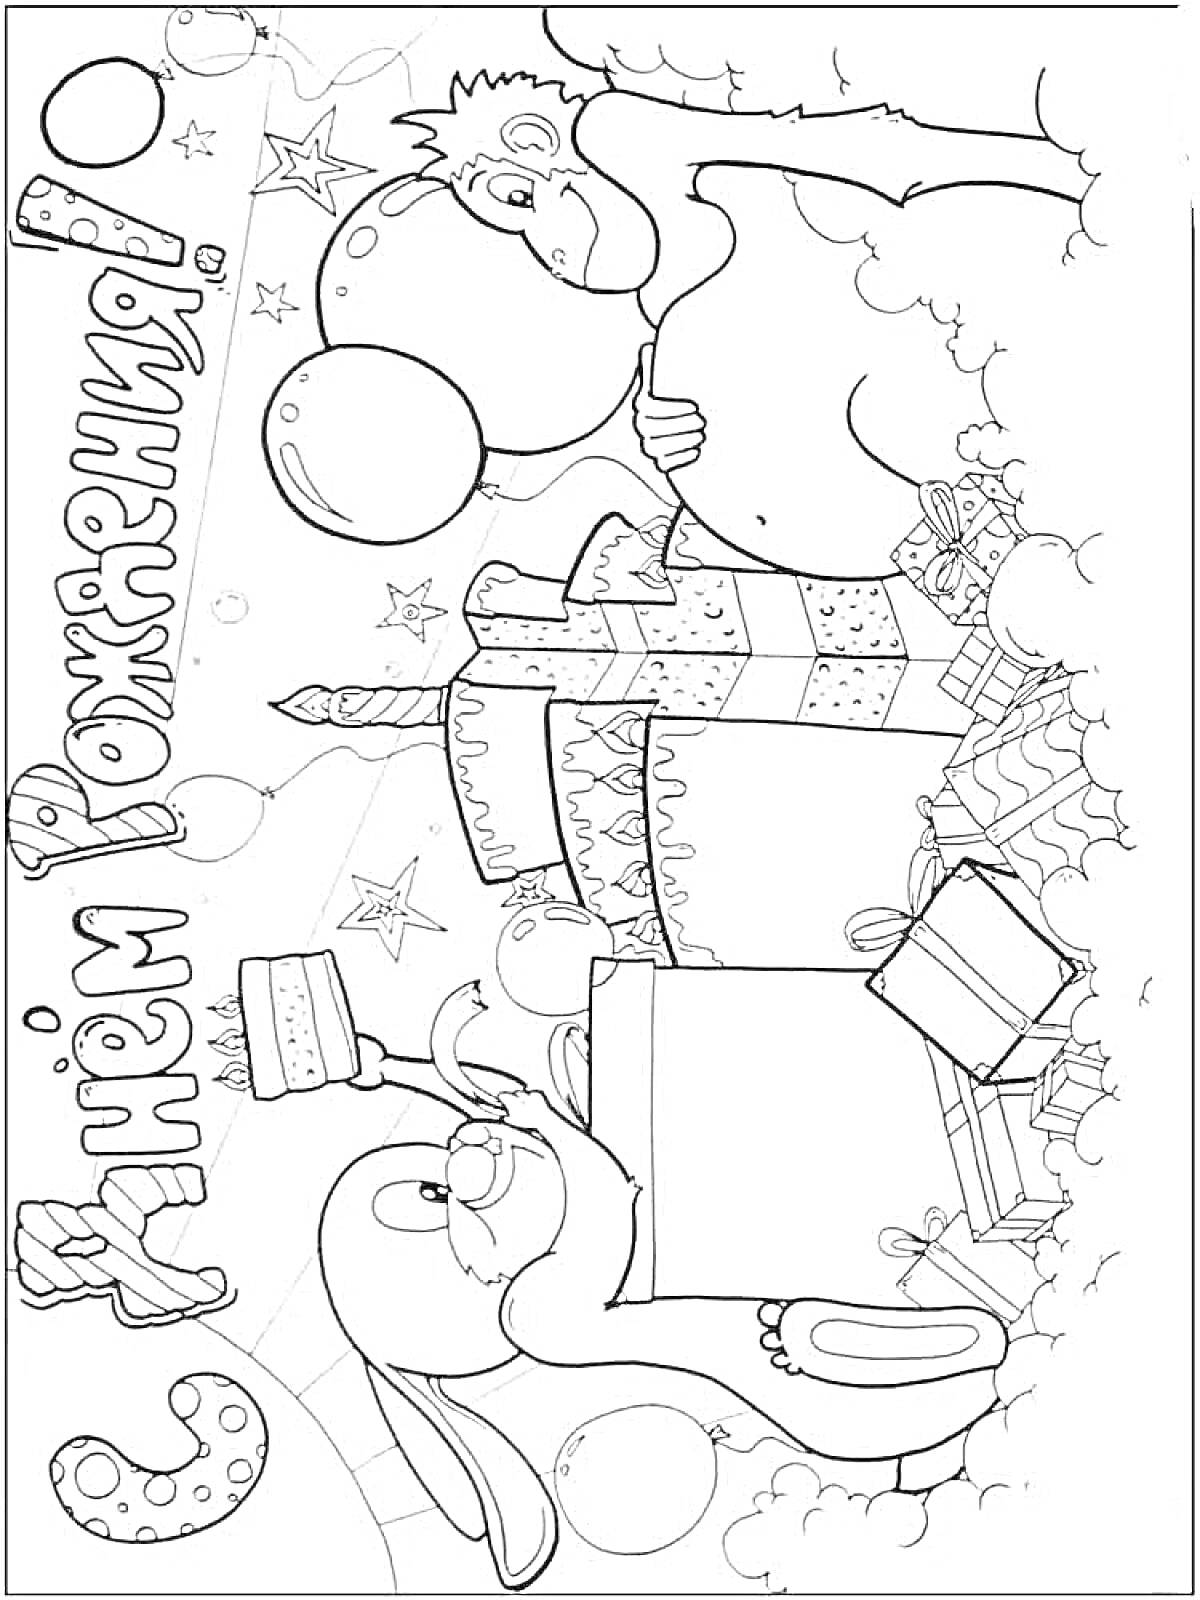 Раскраска открытка дедушке на день рождения с поздравительной надписью, кроликом, кексом, воздушными шарами, подарками и звездочками